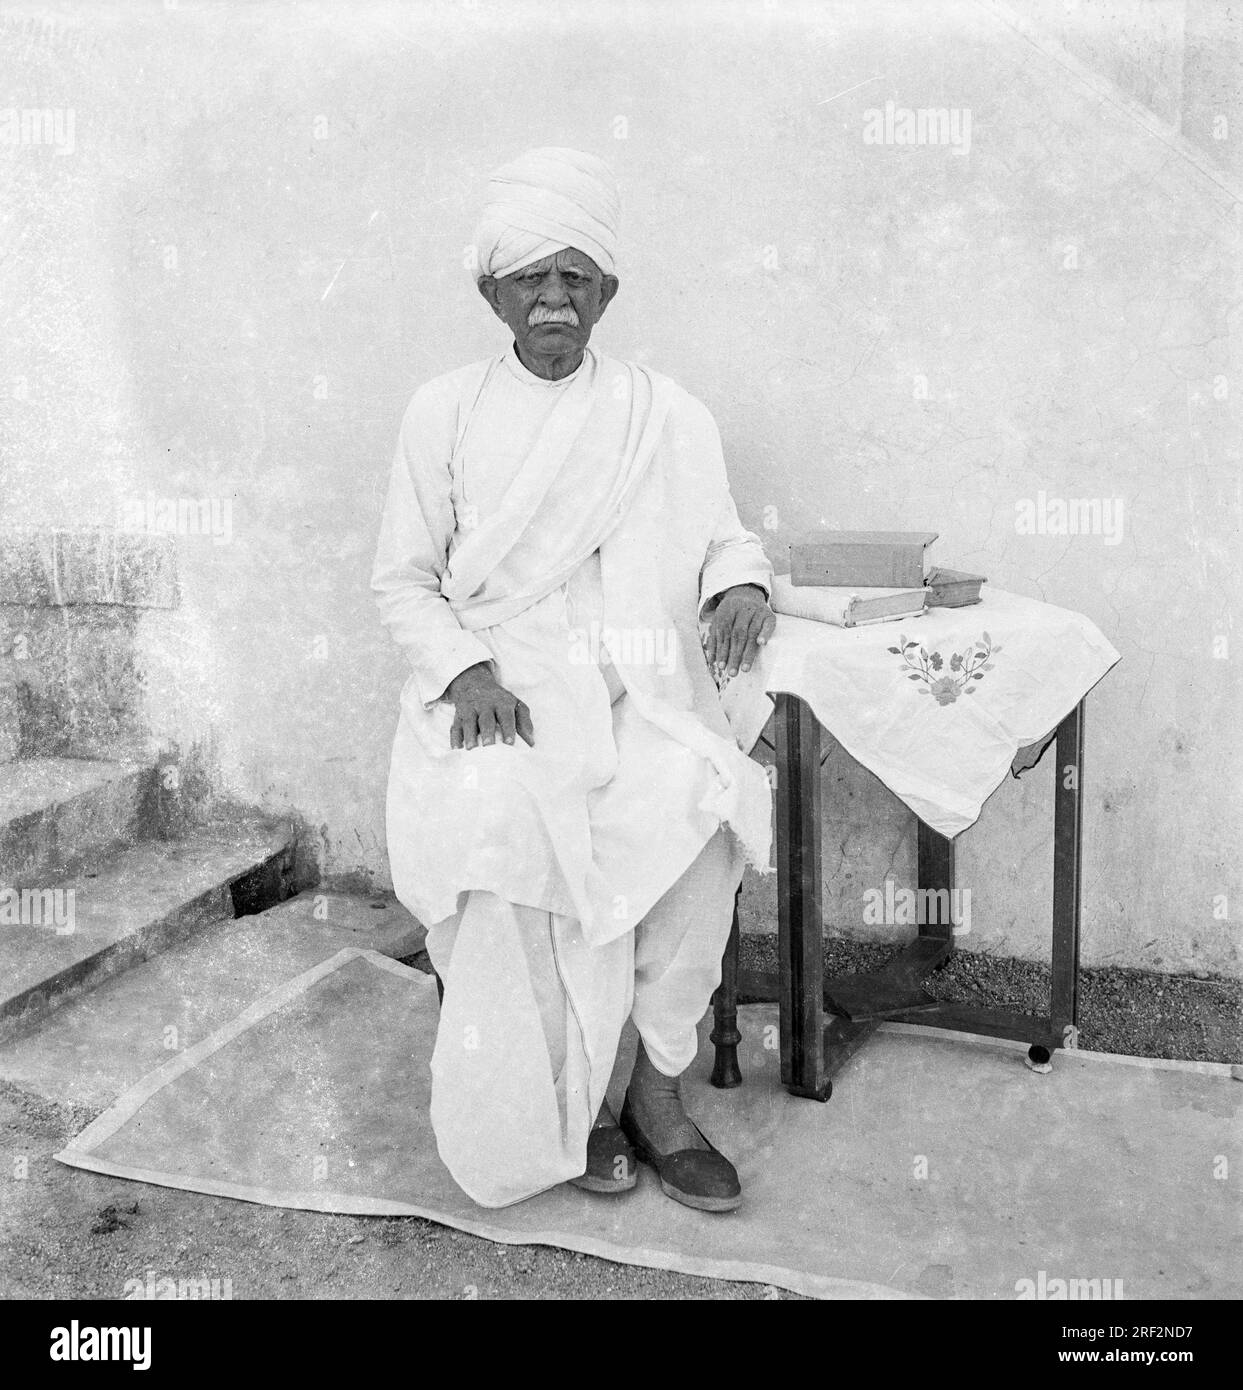 Vieux vintage des années 1900 photo de studio noir et blanc de l'homme indien senior portant dhoti kurta turban Gujarat Inde Banque D'Images